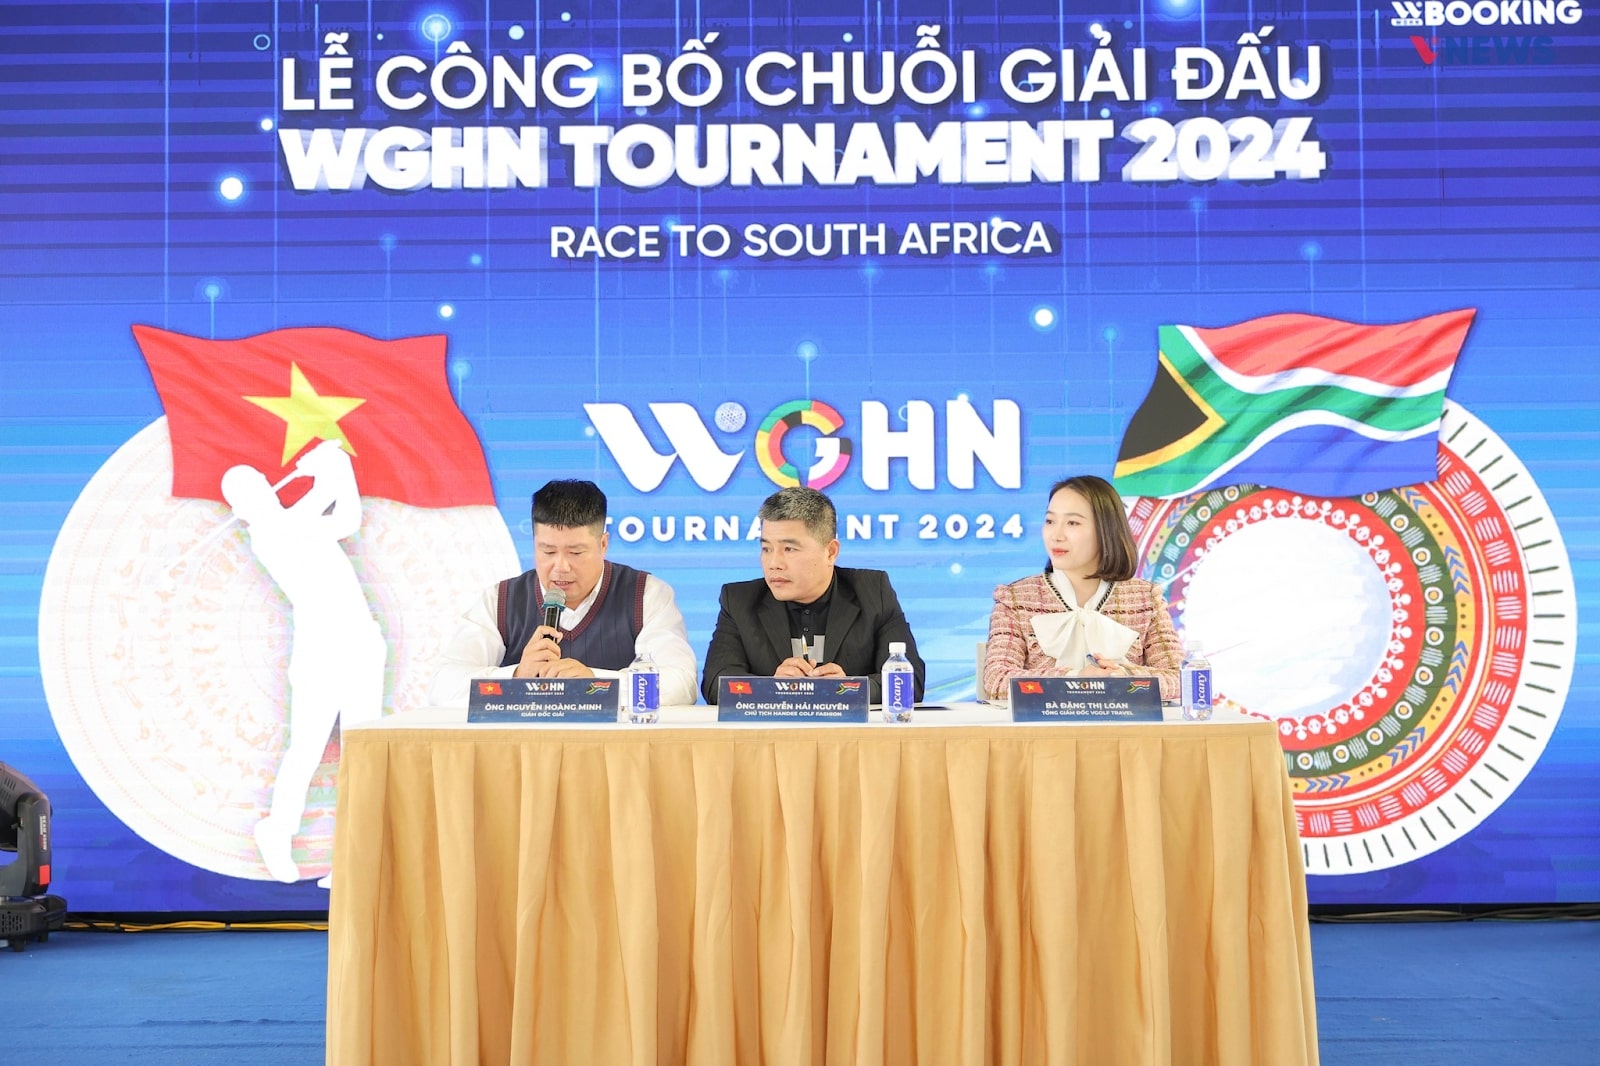 VGolf Travel tự hào là đơn vị tổ chức WGHN Tournament Race to South Africa 2024